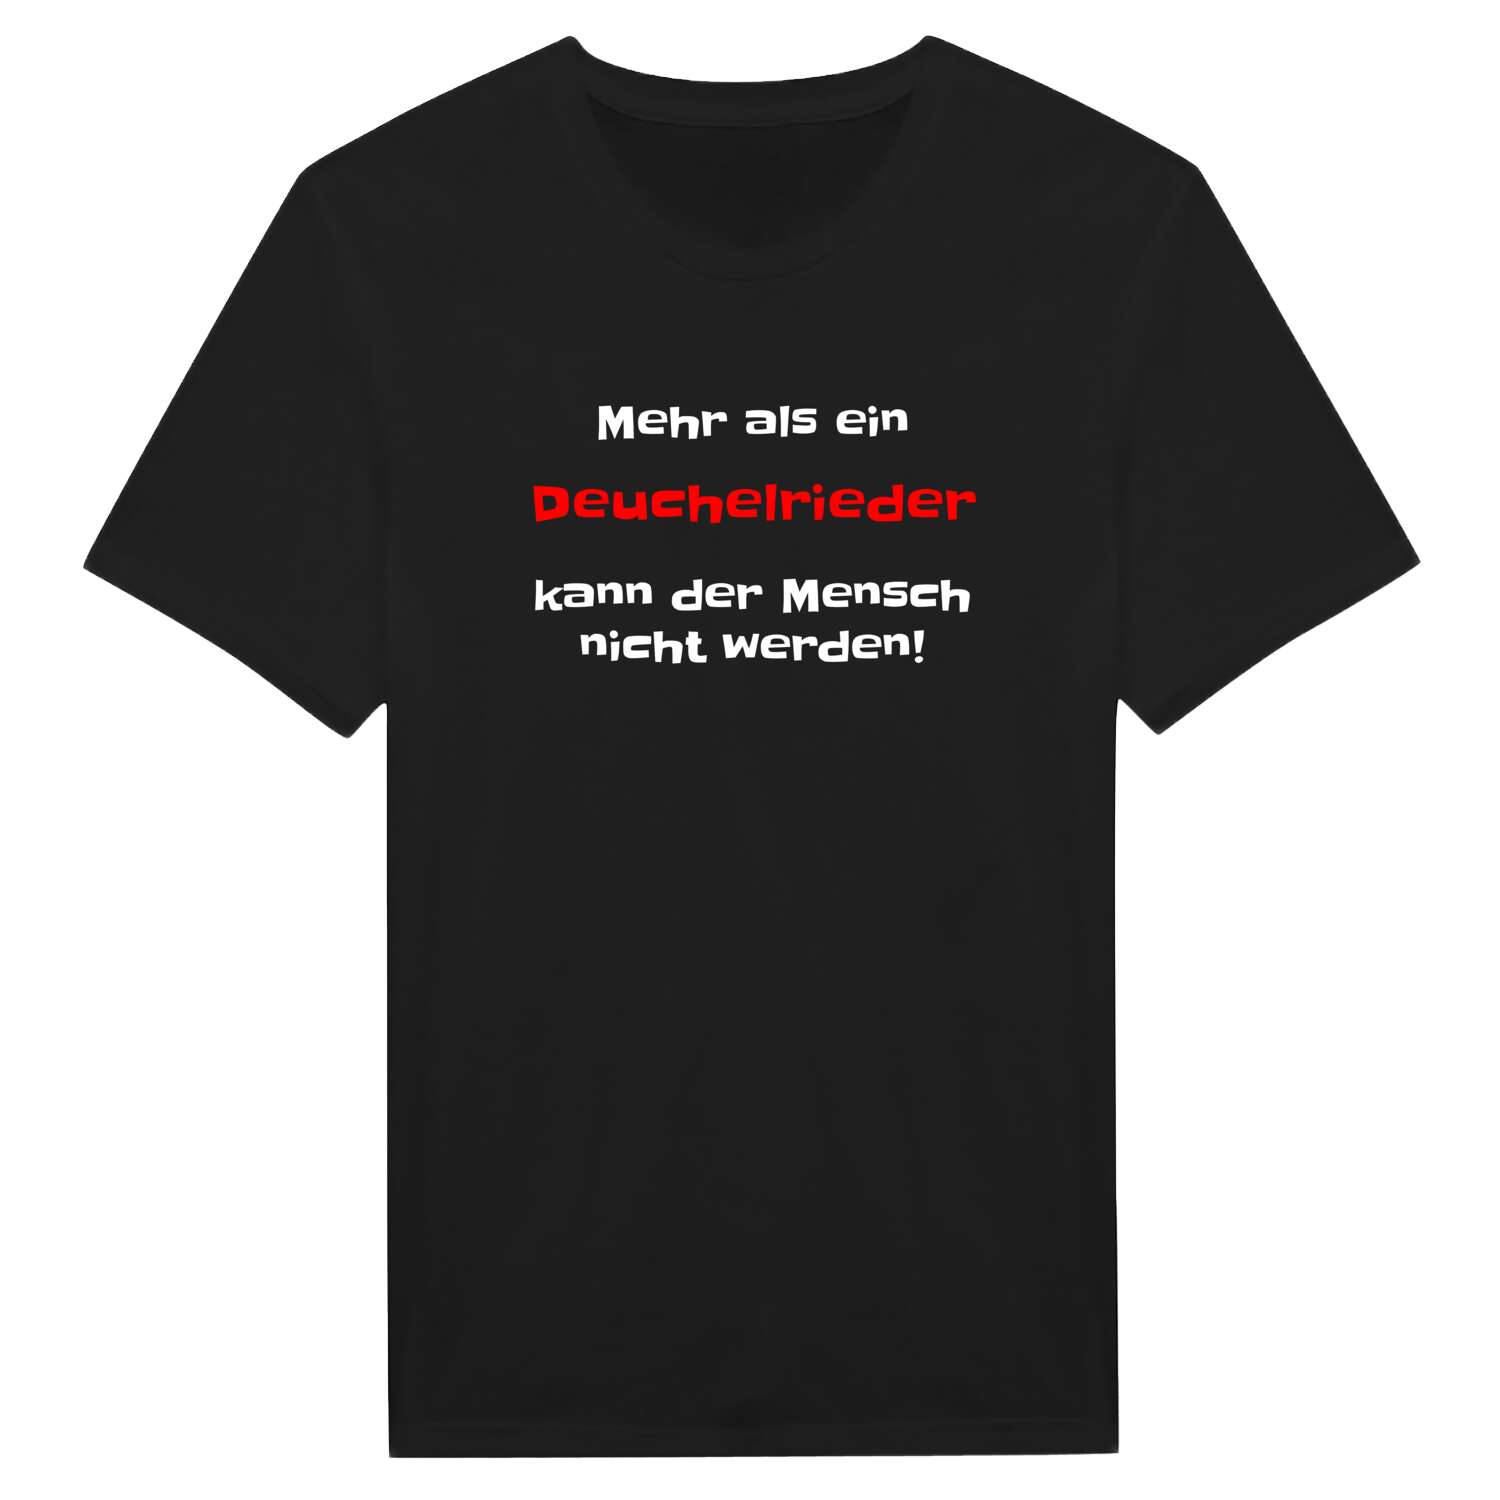 Deuchelried T-Shirt »Mehr als ein«